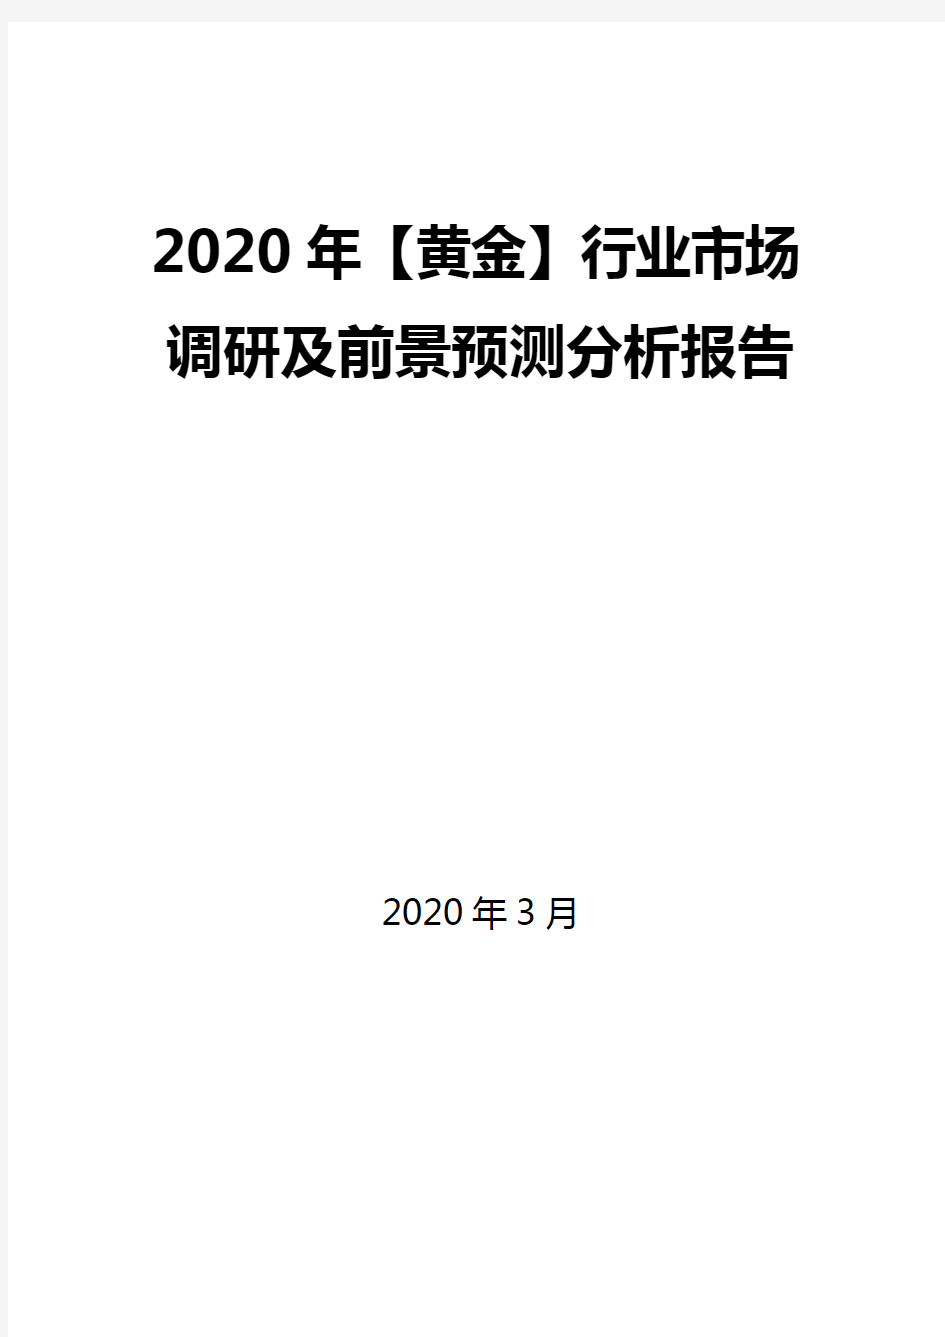 2020年【黄金】行业市场调研及前景预测分析报告